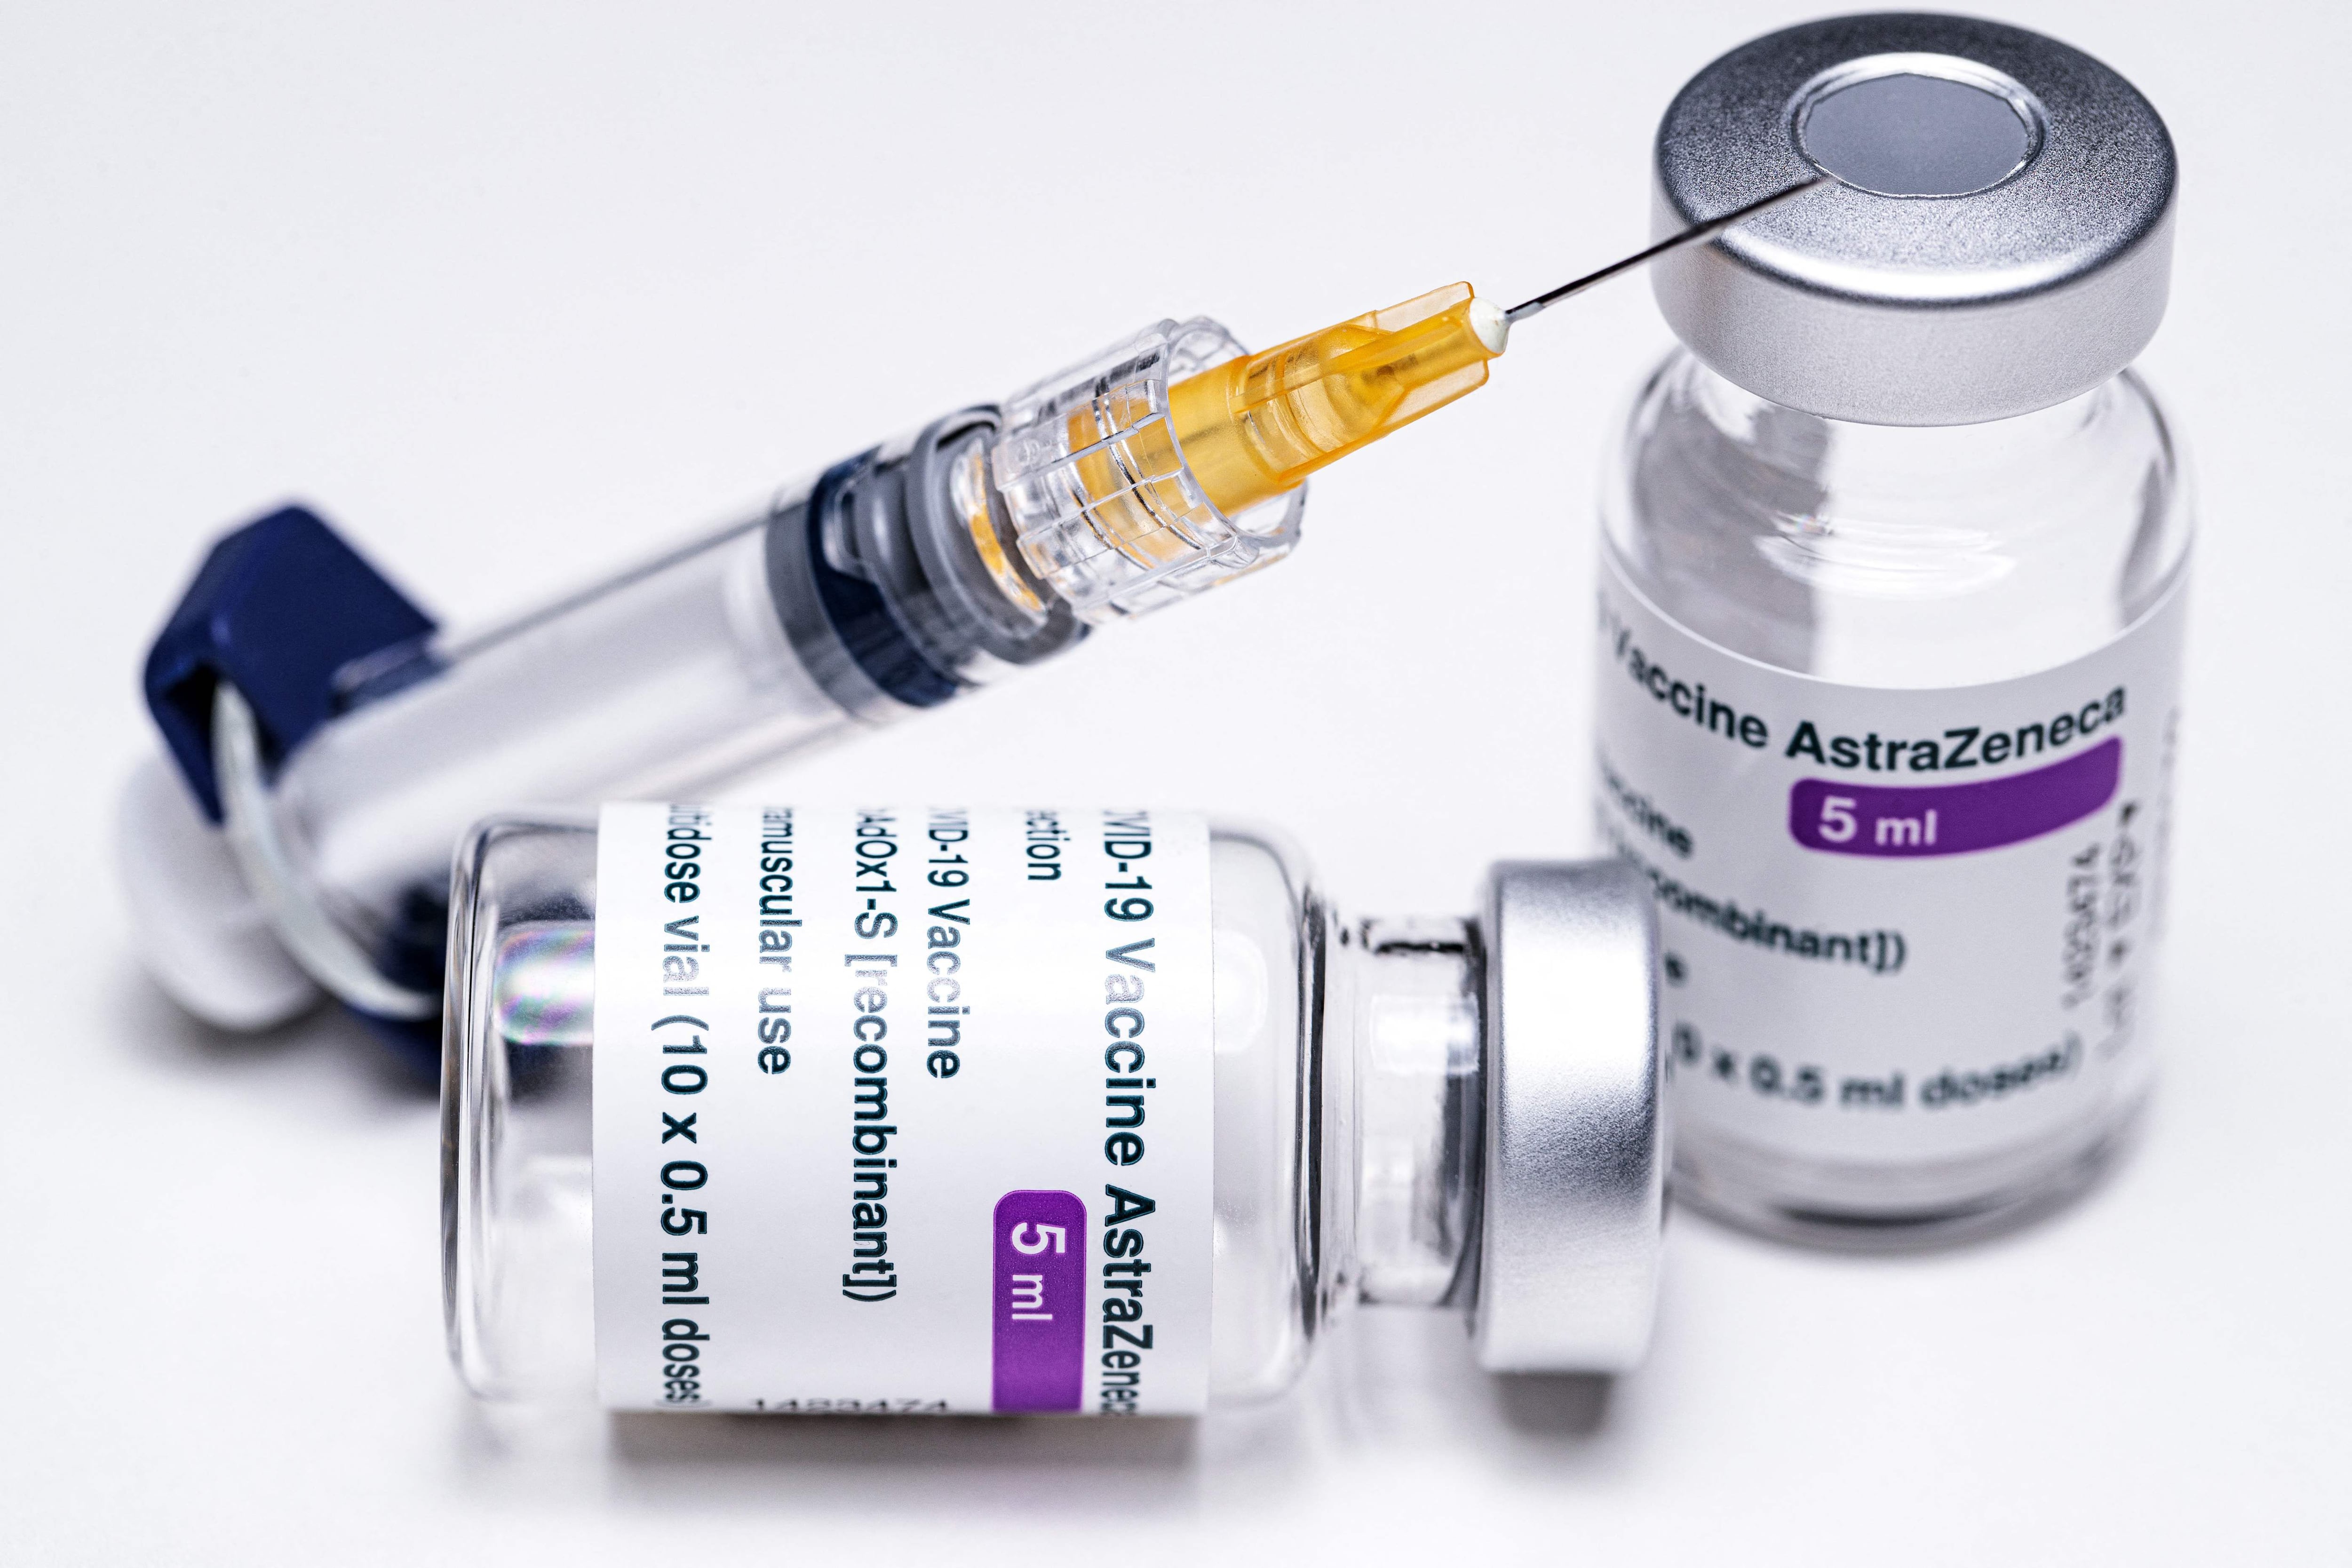 OMS analiza si la vacuna de AstraZeneca es segura ante temor en países por casos de coágulos en vacunados